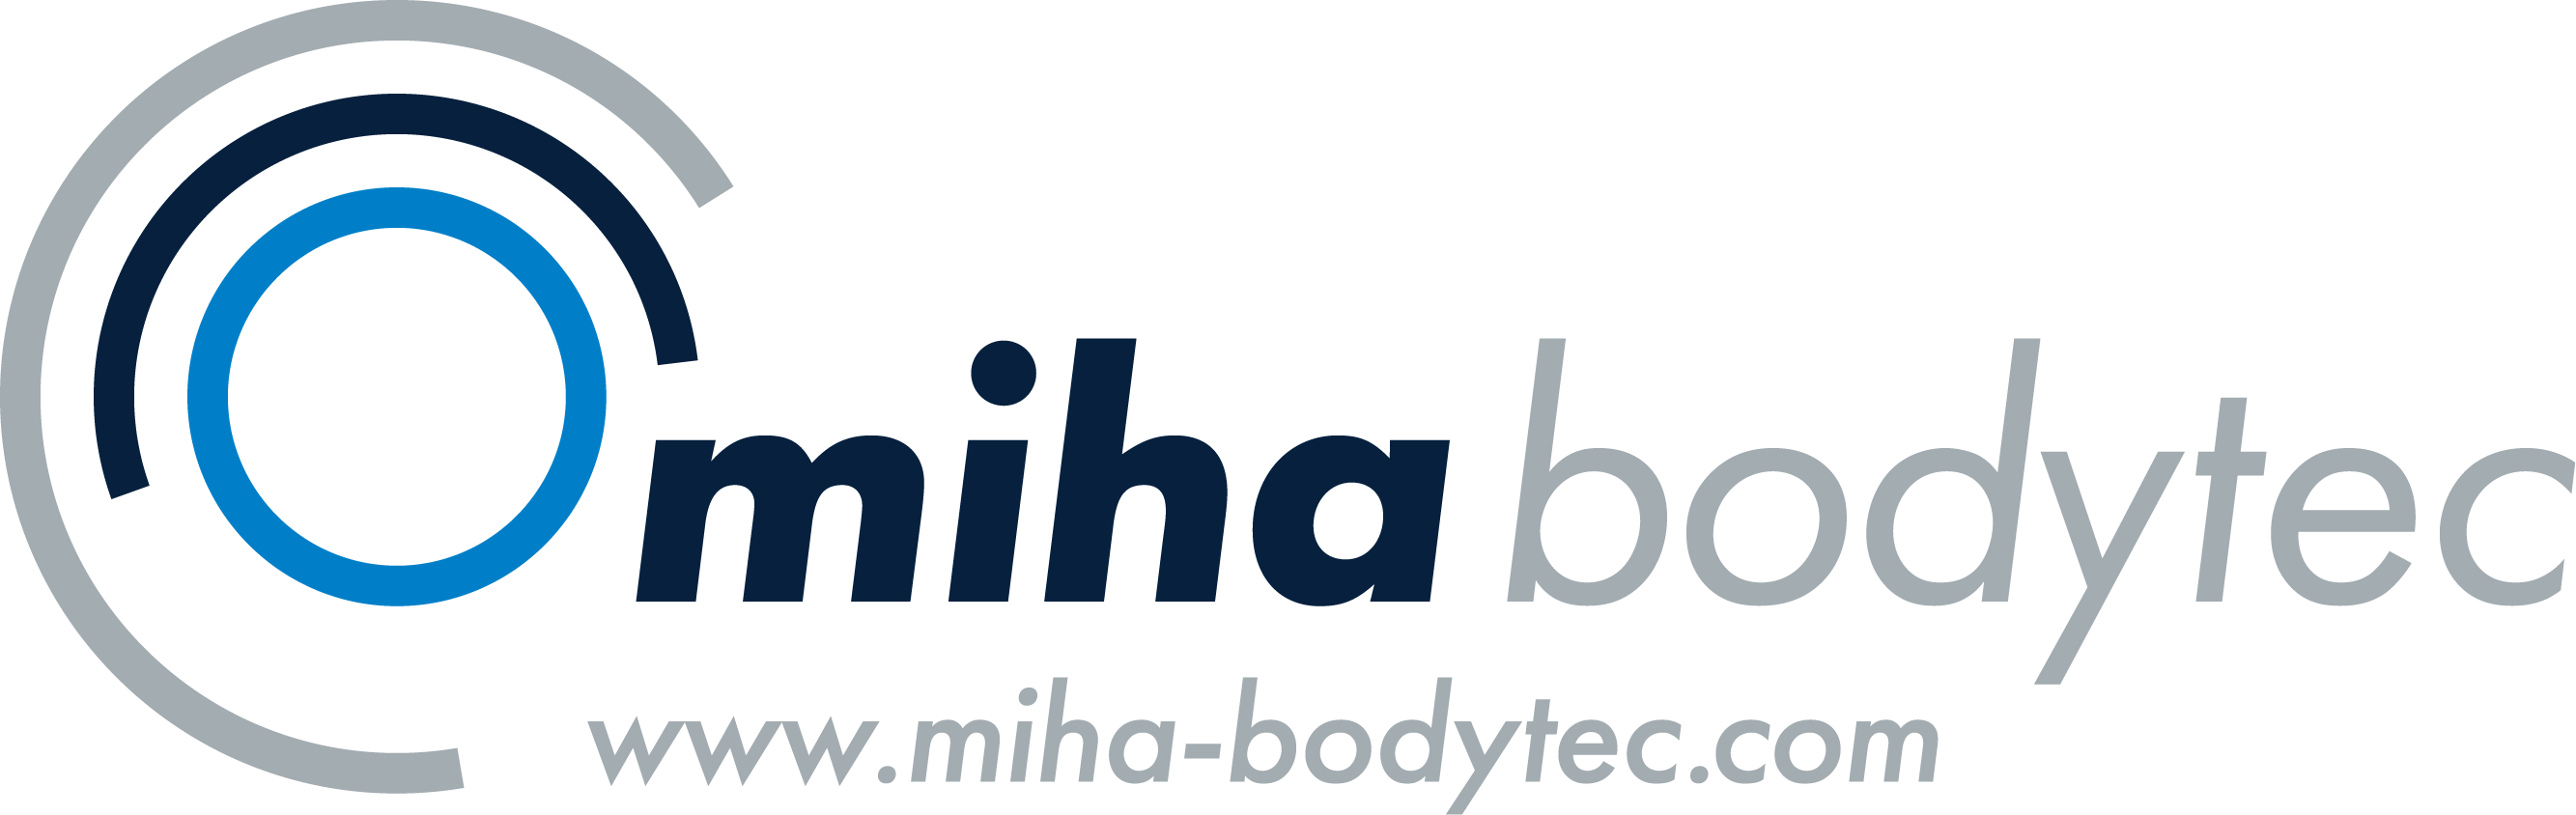 220407_Logo_miha_bodytec_www_white_background